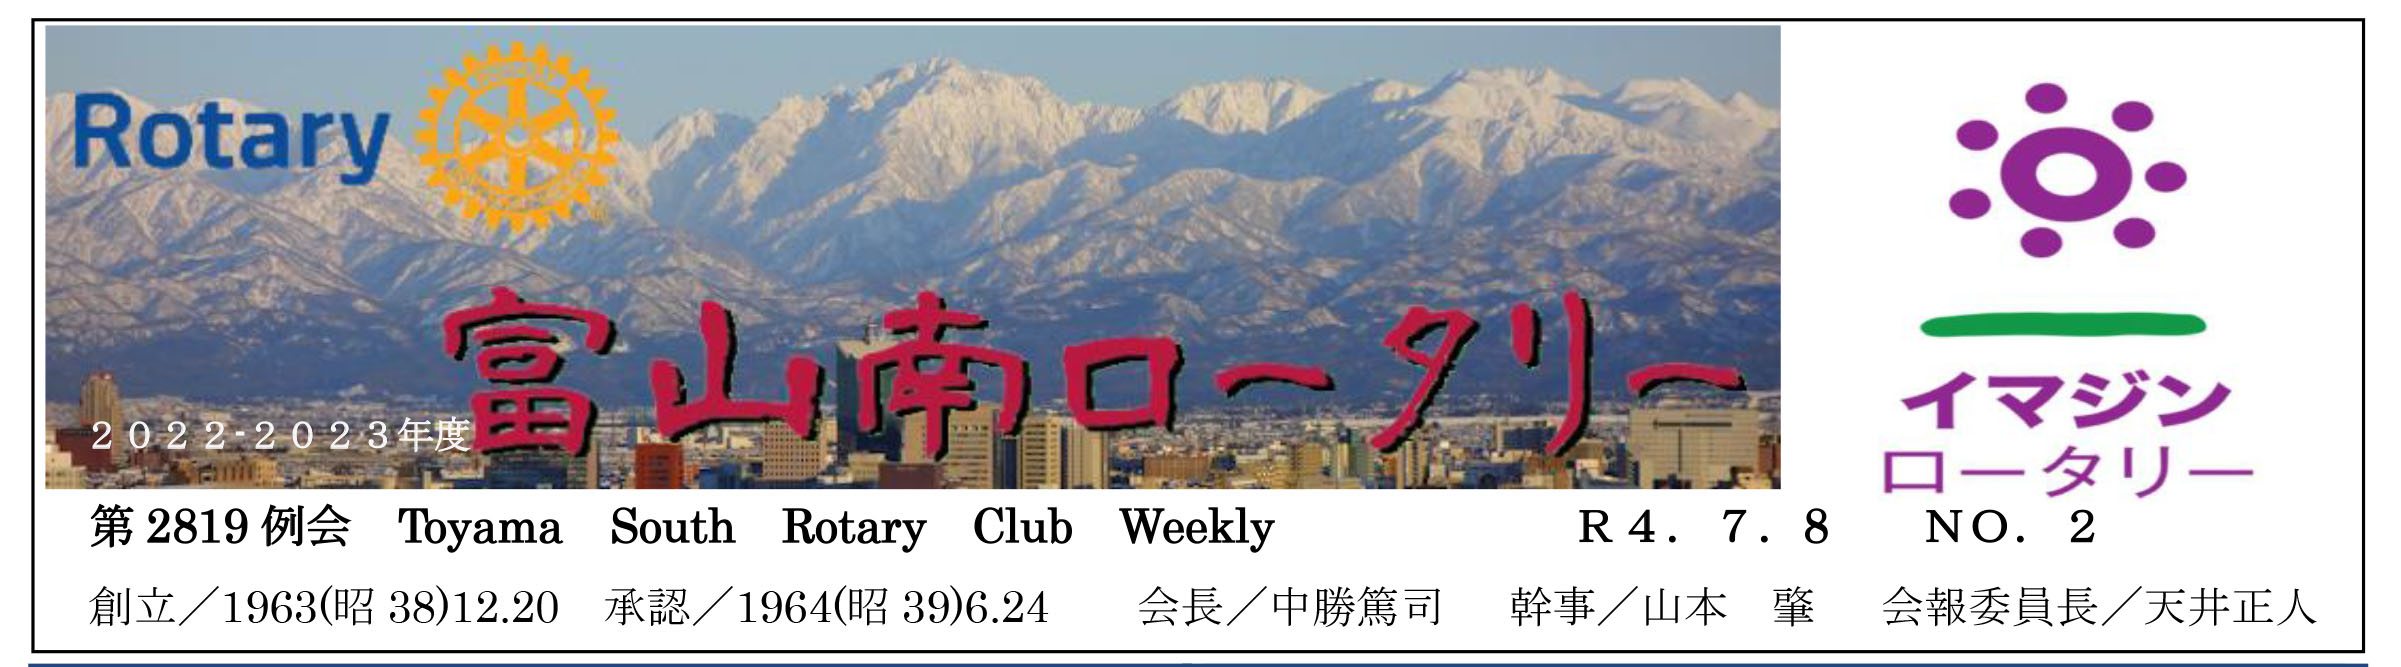 弊社代表取締役が富山南ロータリークラブの会長に就任いたしました